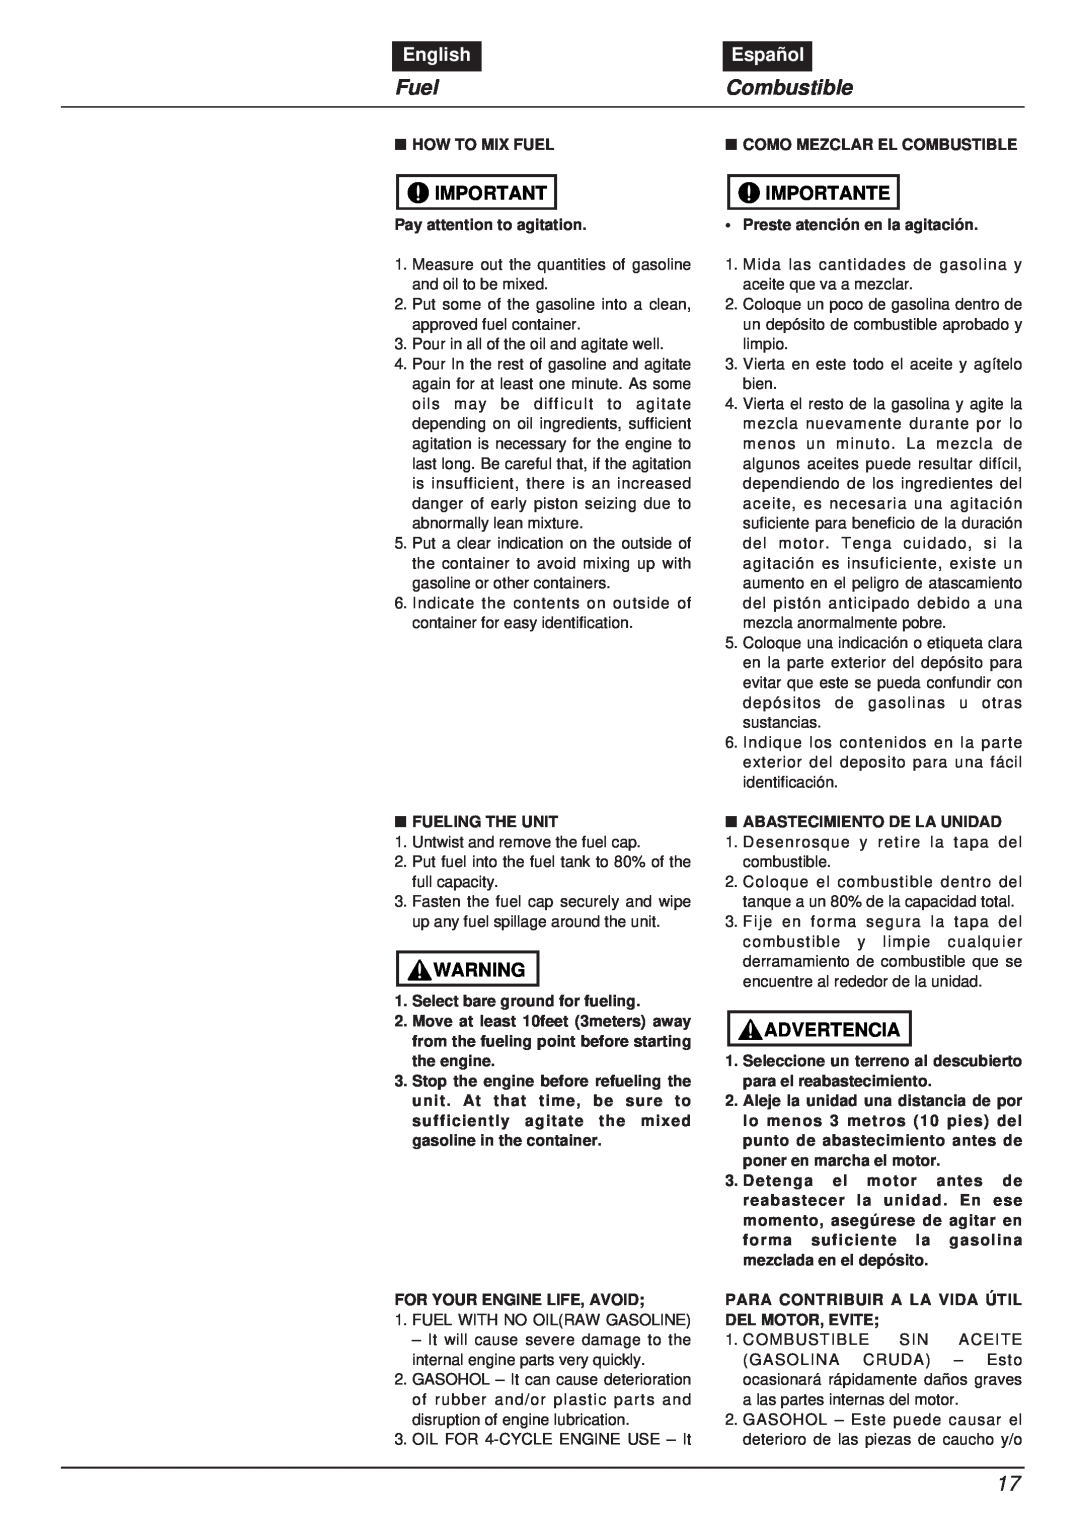 RedMax EBZ8000RH manual Fuel, Combustible, English, Español, Importante, Advertencia 